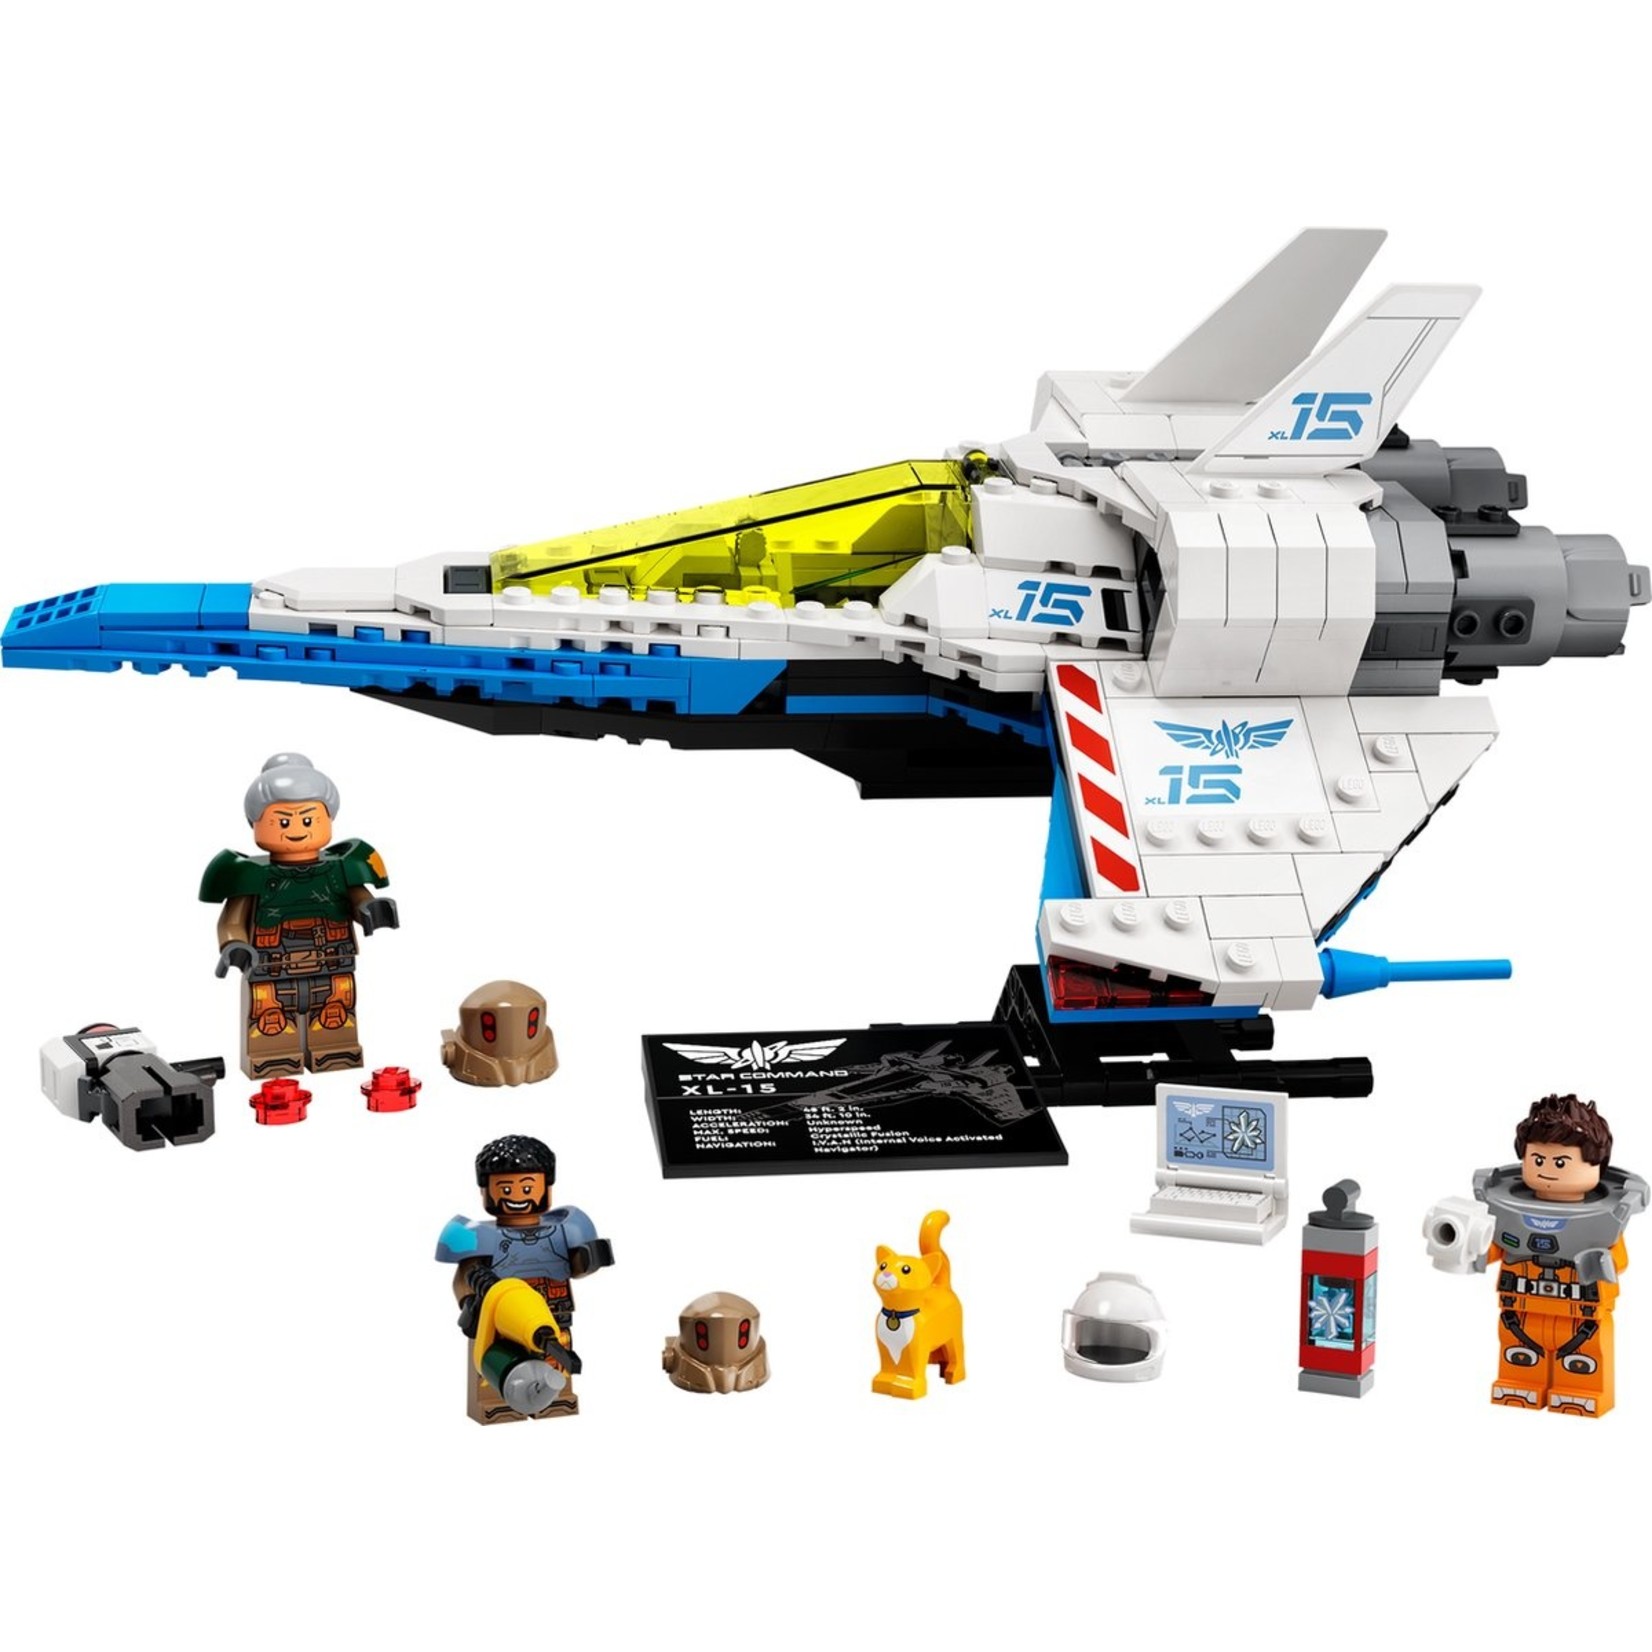 LEGO LEGO Disney Pixar Buzz Lightyear XL-15 Spaceship (76832)